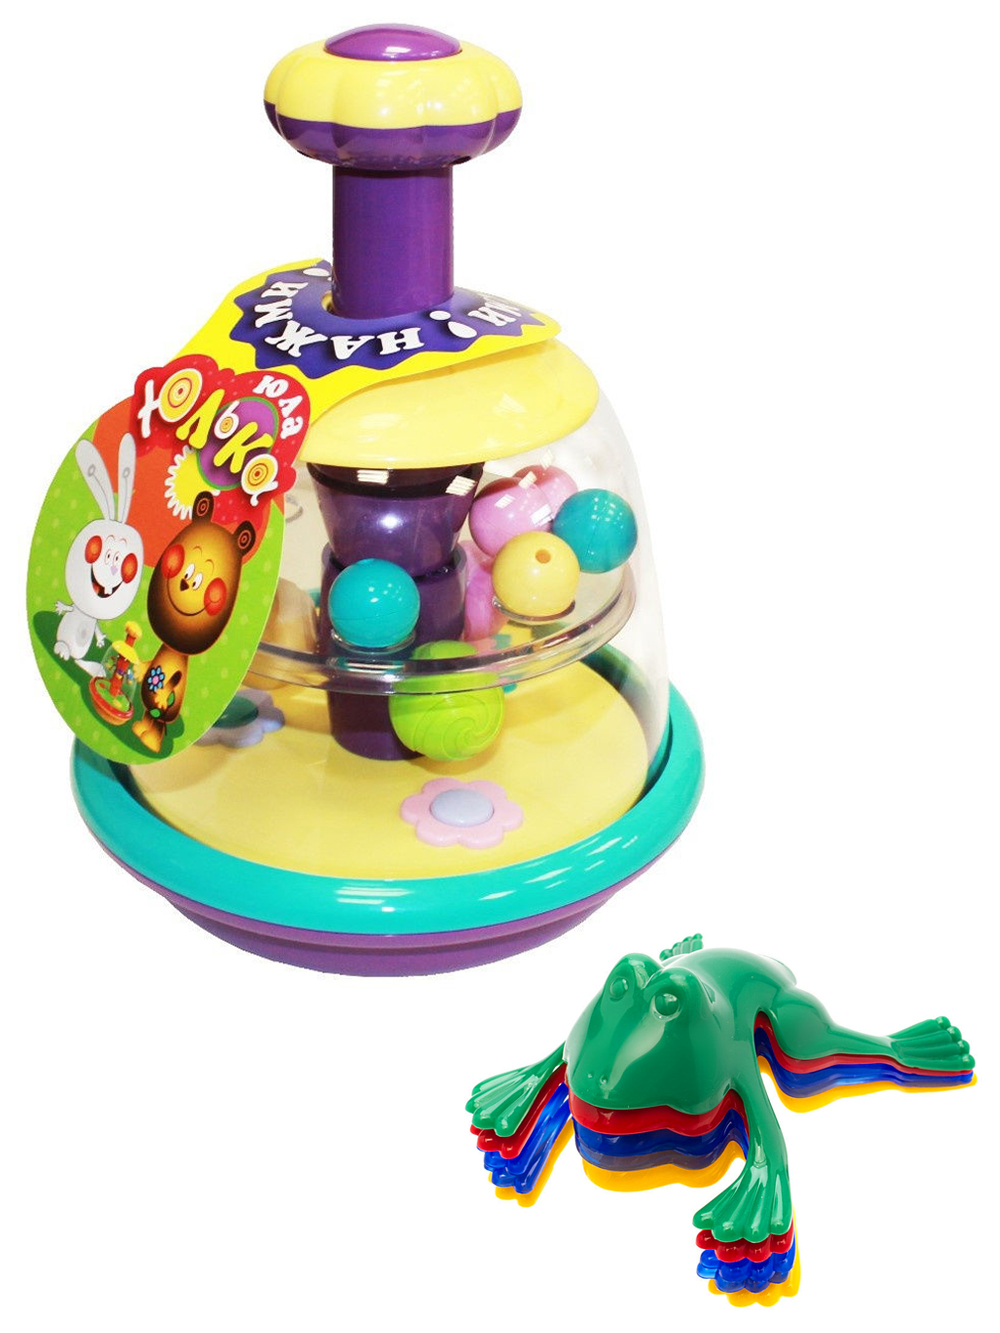 Развивающие игрушки Биплант Юла Юлька пастельные цвета+ Команда КВА №1 маэстро игрушки из воздушных шариков